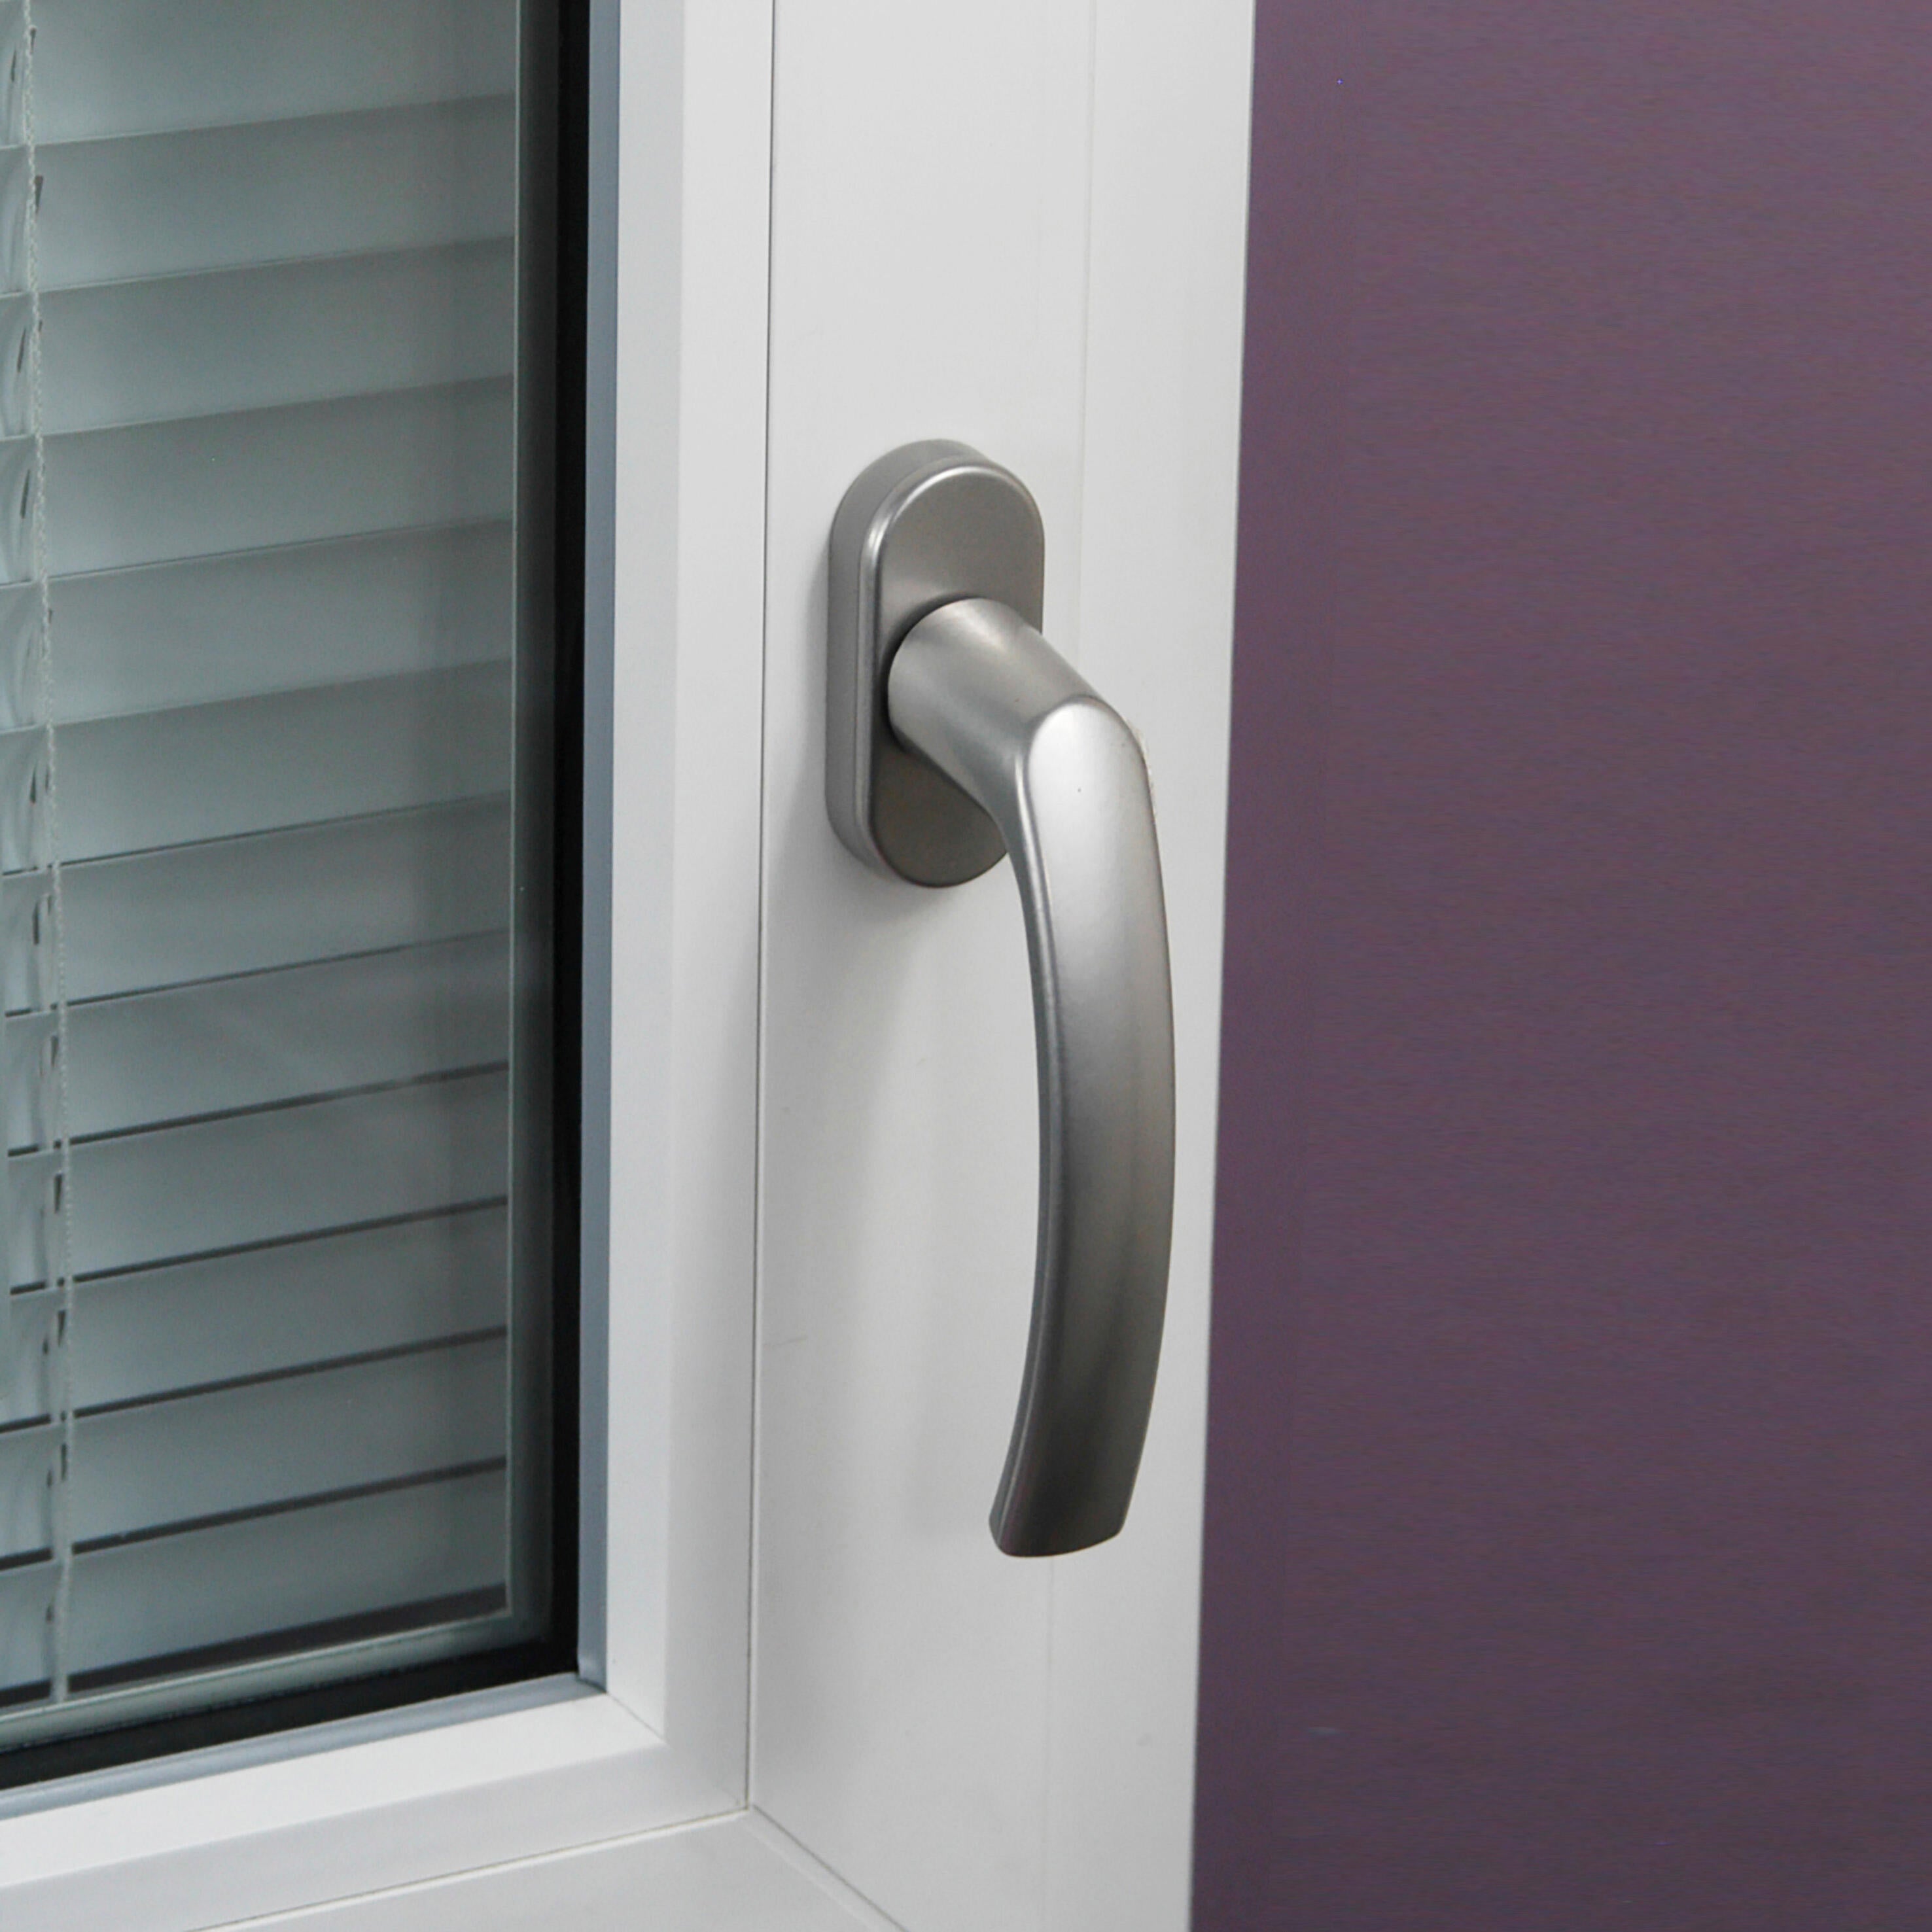 Maniglia per finestra per interni in lega di alluminio e plastica in acciaio inox scorrevole per finestra e accessori in vetro apertura destra bianca